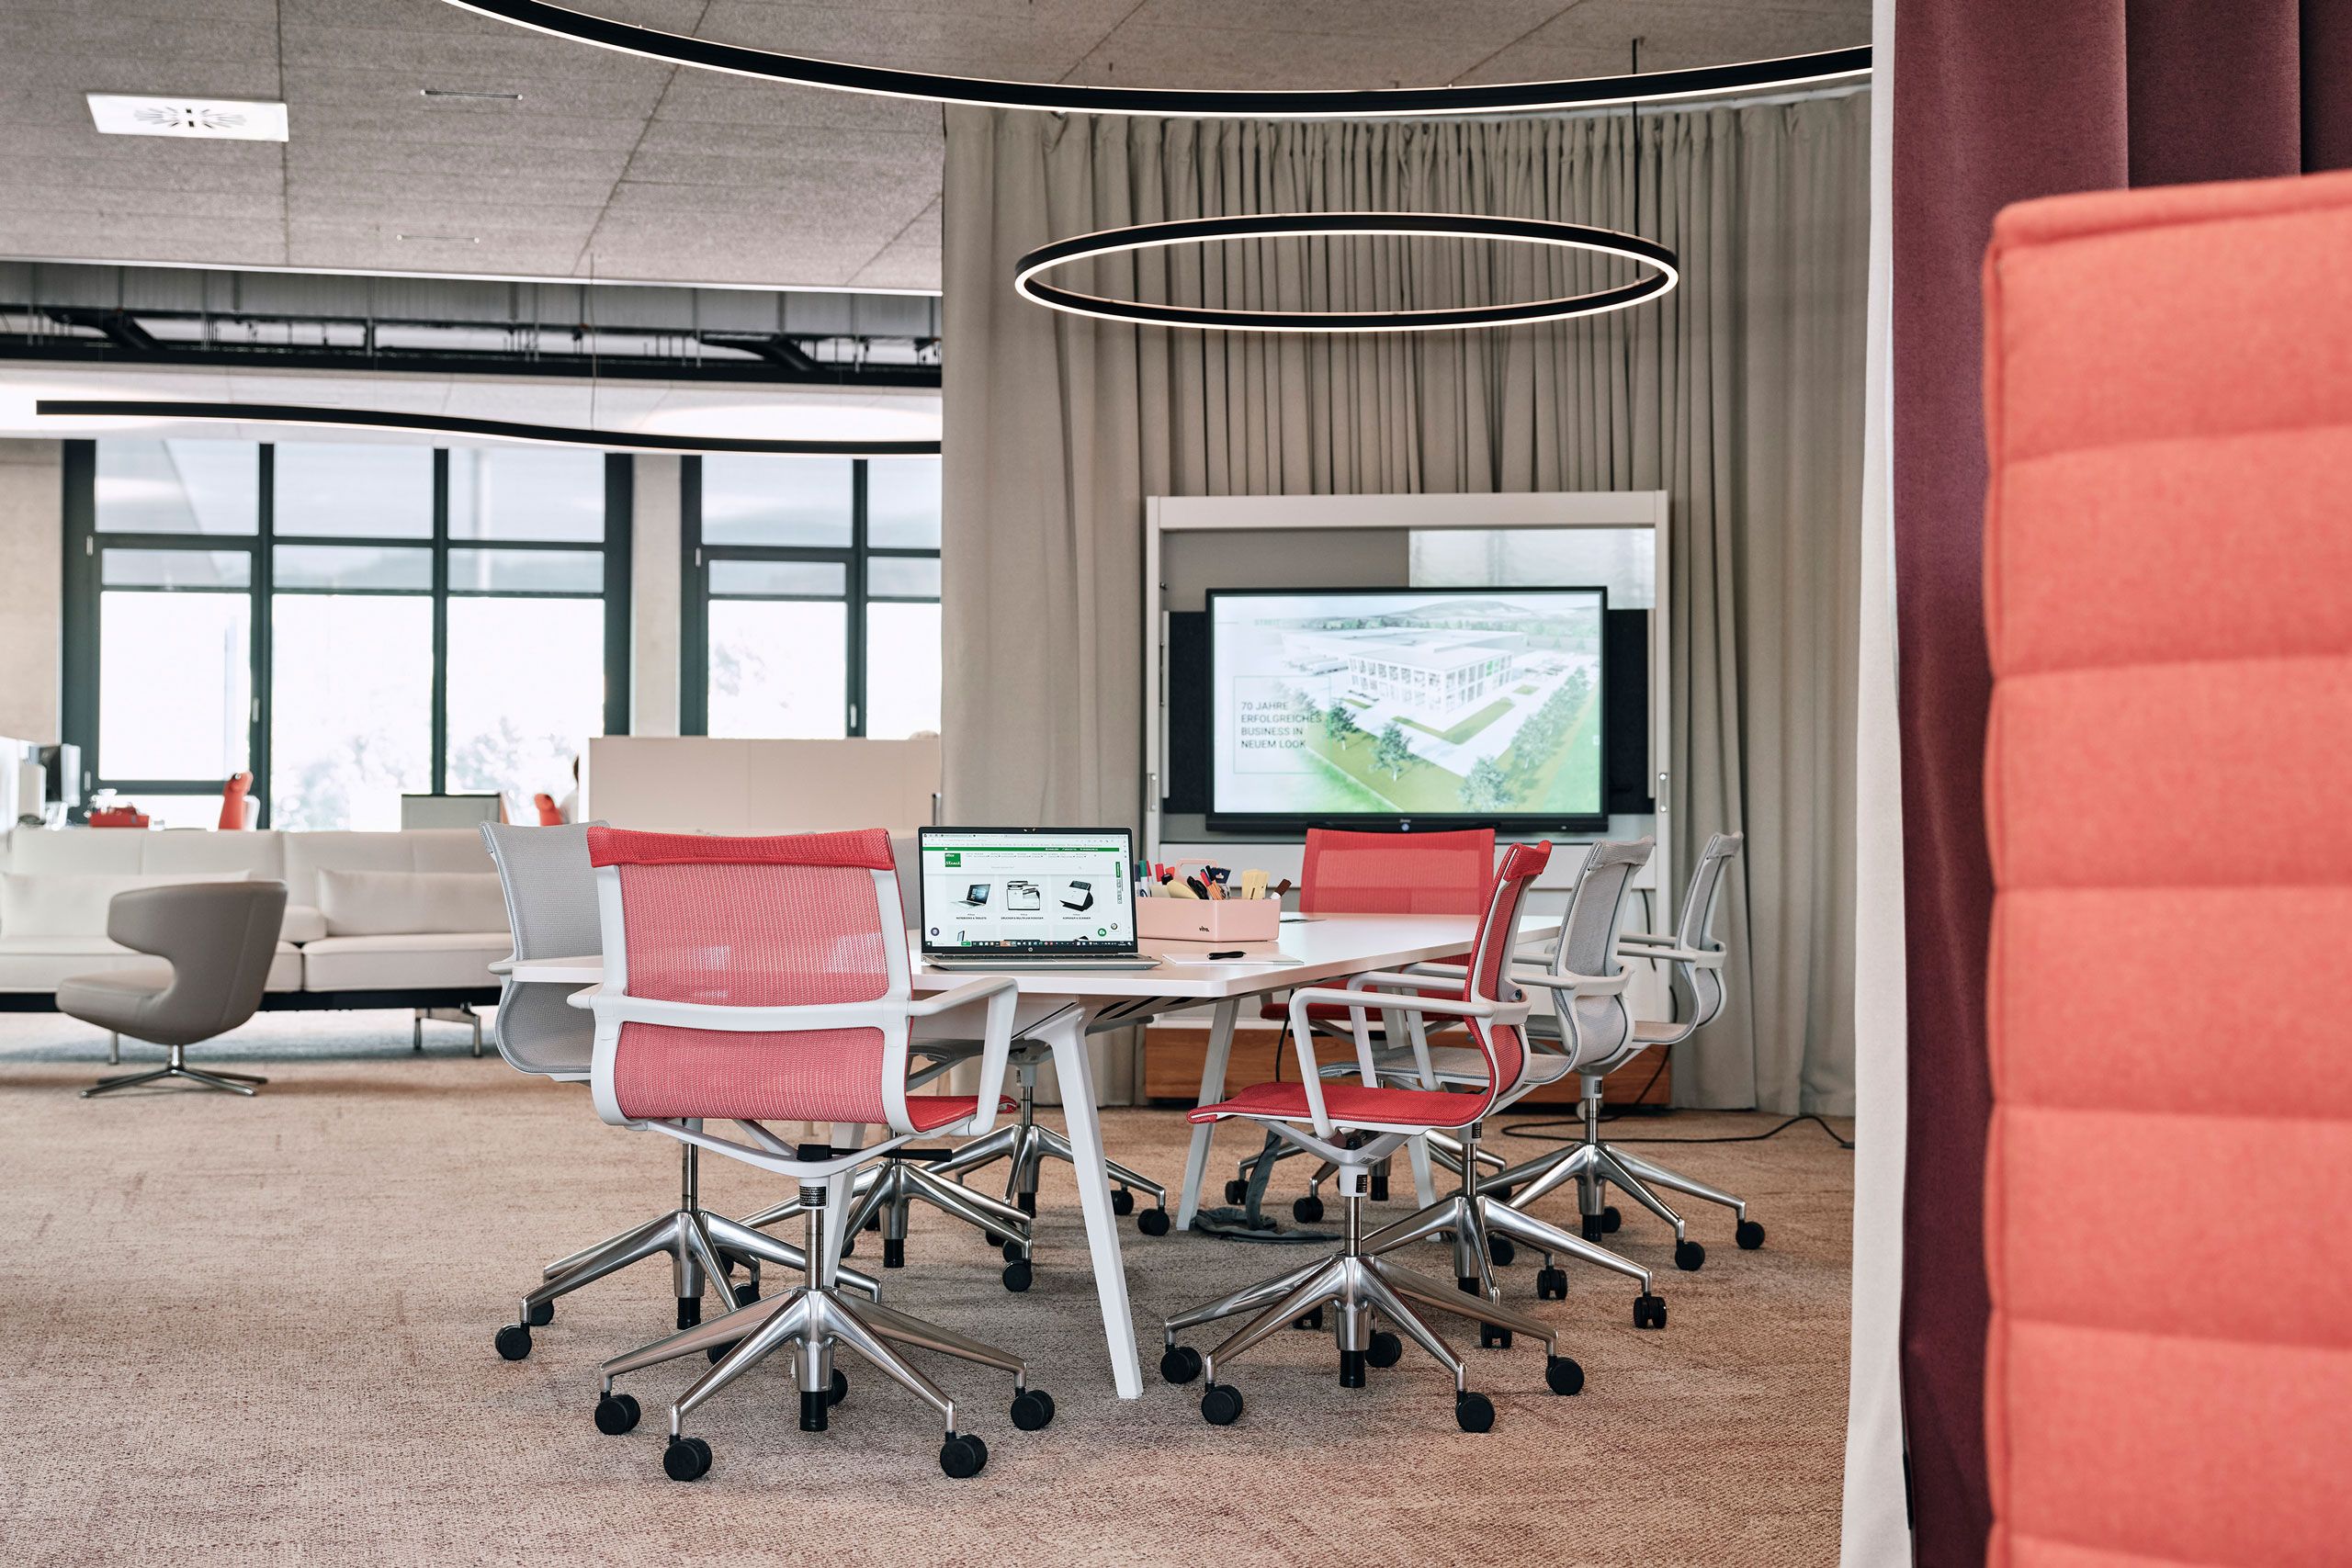 Offene Bürosituation mit Sitzungstisch und Präsentations-TV zoniert durch einen Akustiktrennvorhang.